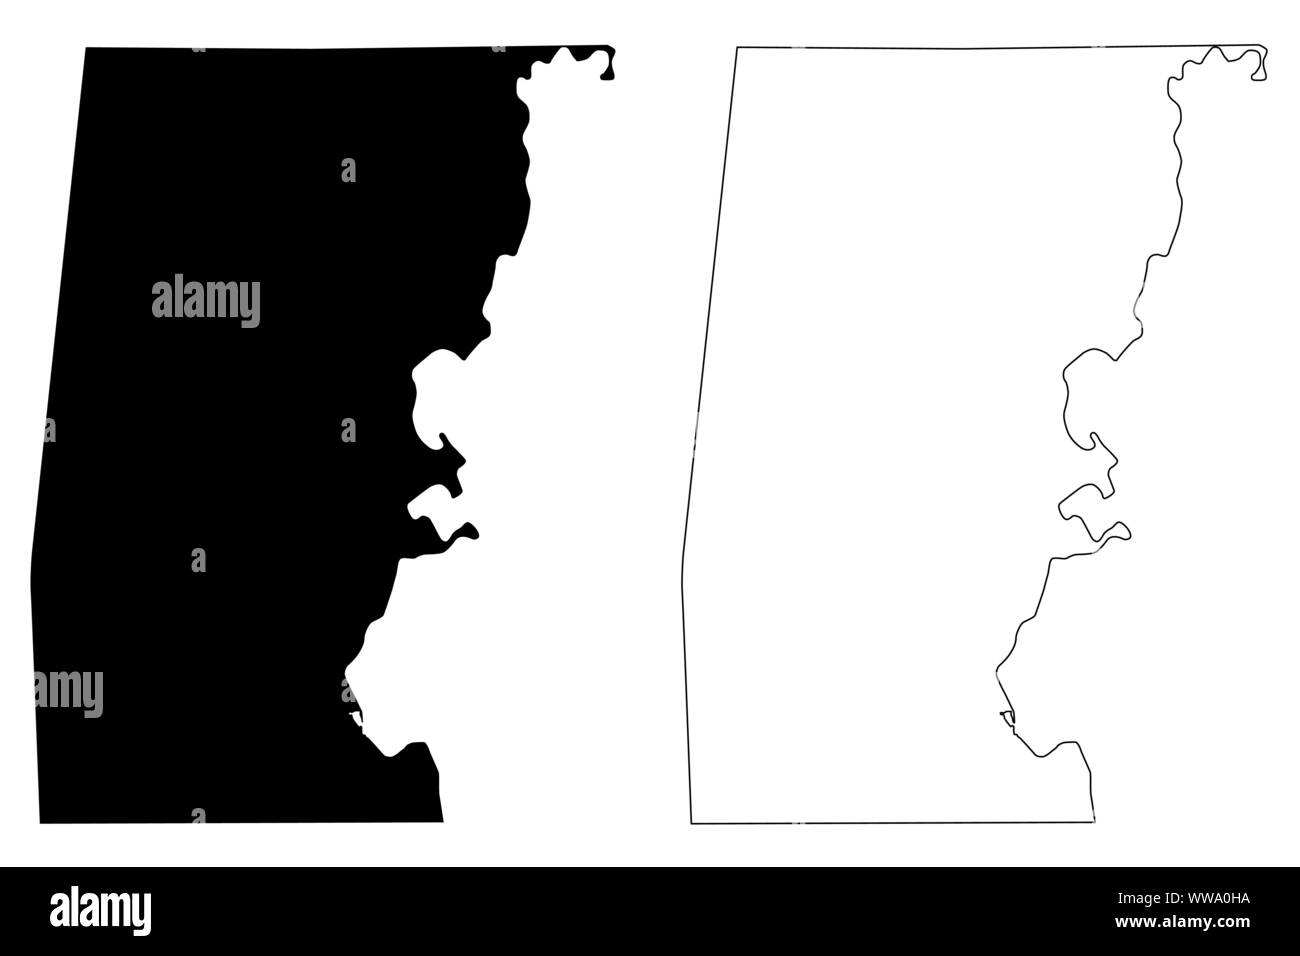 Choctaw County, Alabama (Grafschaften in Alabama, Vereinigte Staaten von Amerika, USA, USA, USA) Karte Vektor-illustration, kritzeln Skizze Choctaw Karte Stock Vektor